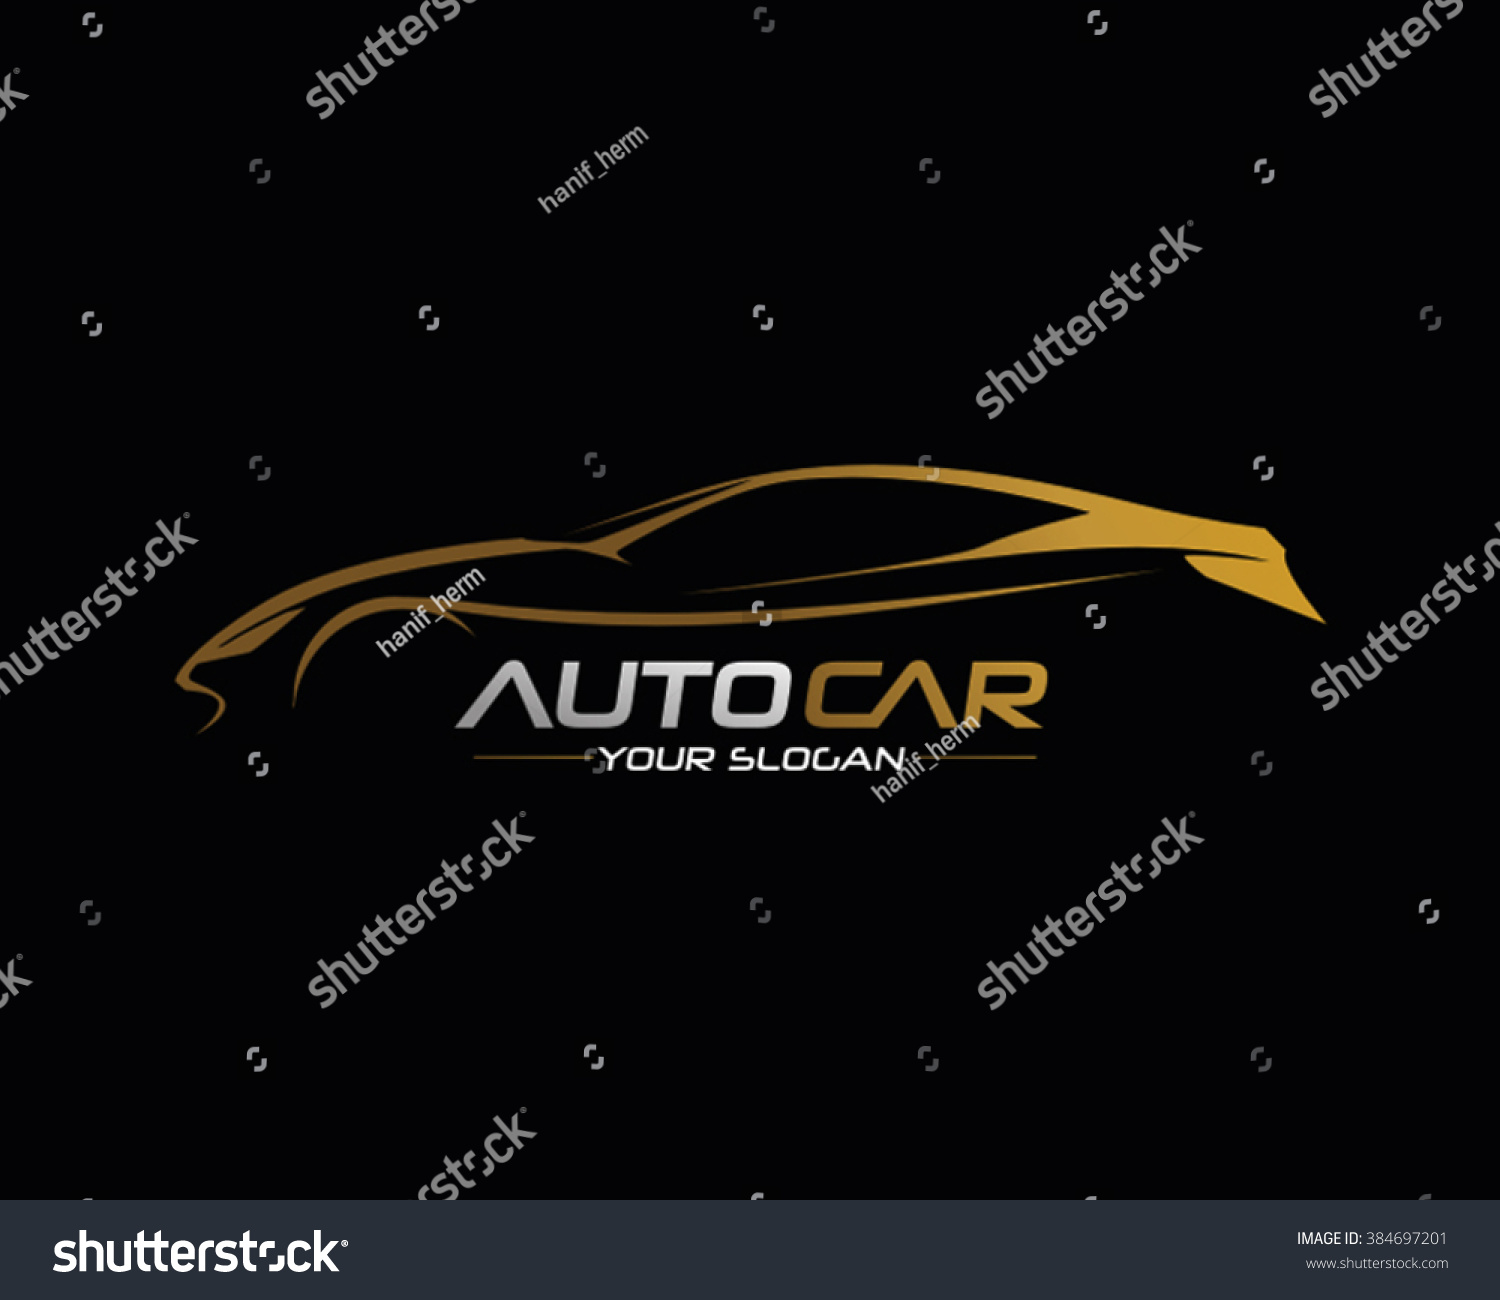 Car Logo Vector Illustration - 384697201 : Shutterstock